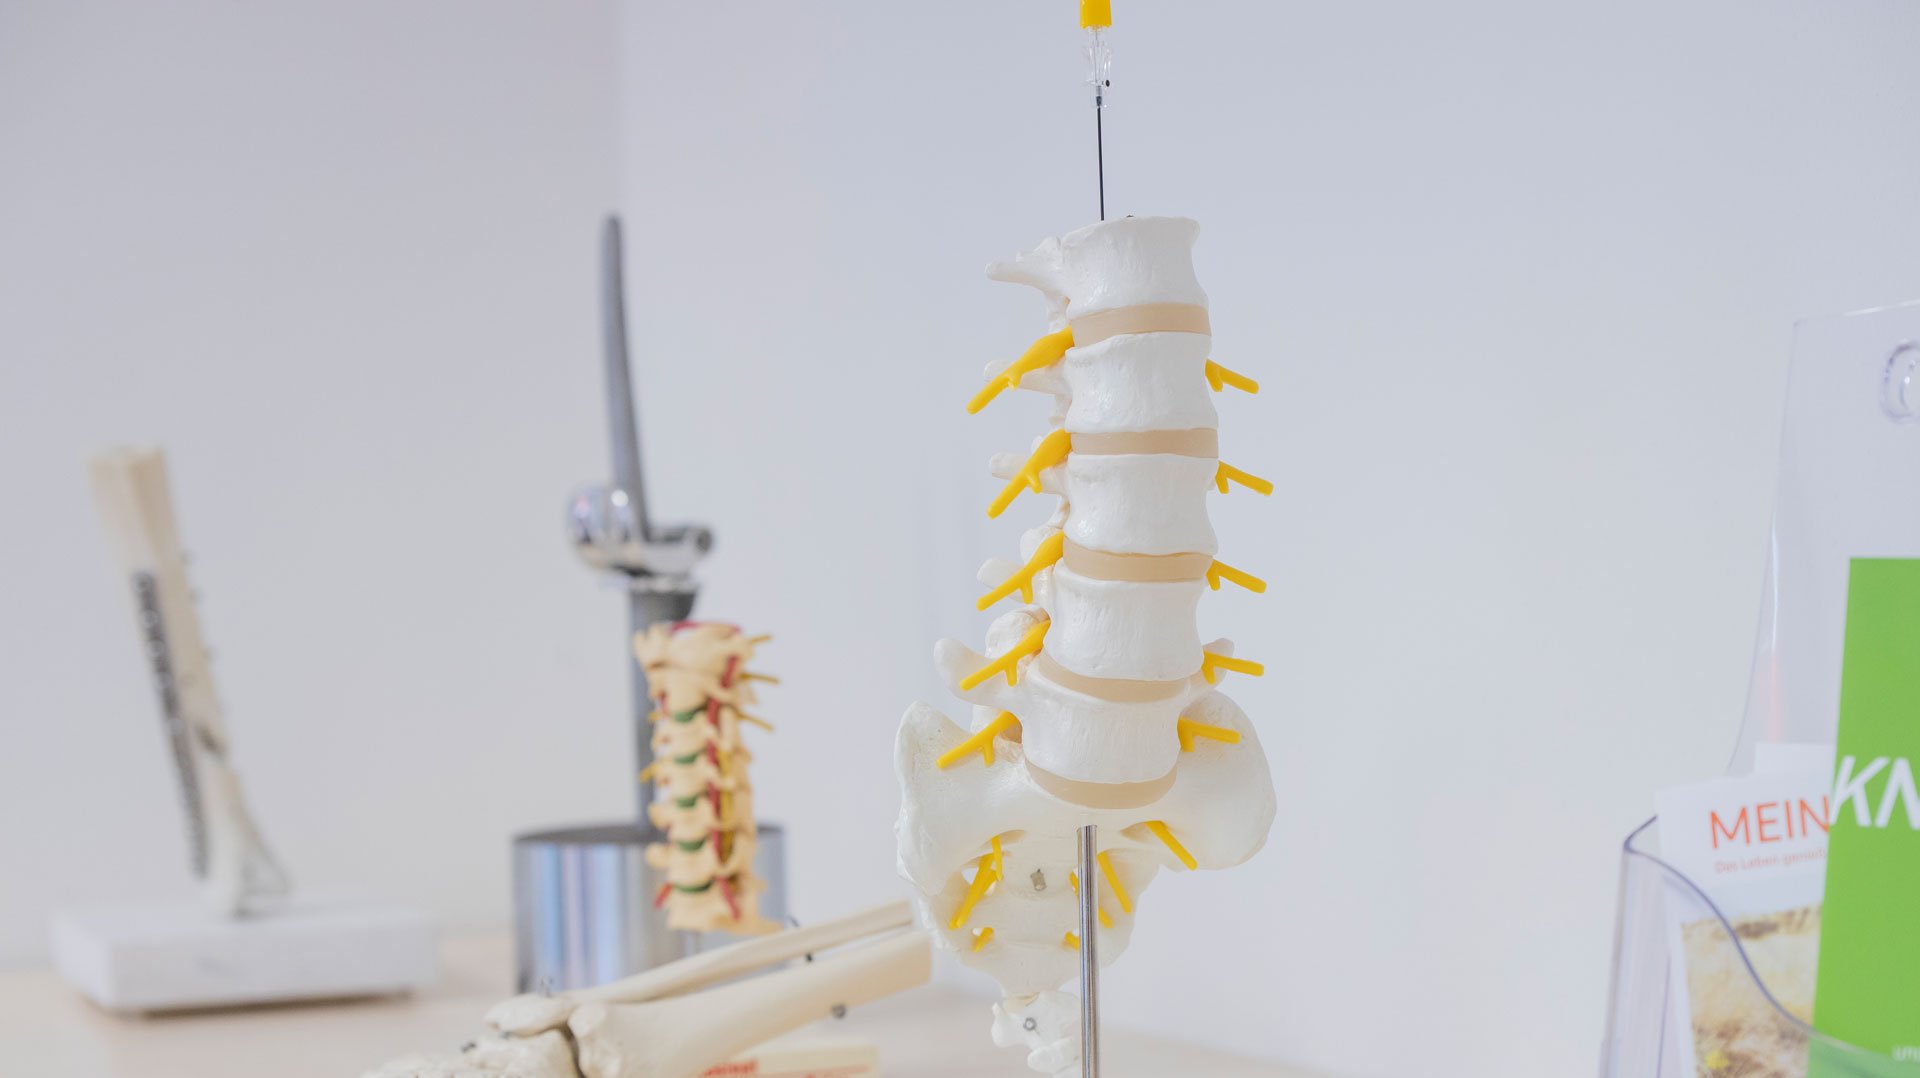 Zu sehen sind vercshiedene Knochen-Modelle auf einer weißen Anrichte in einem Behandlungszimmer - der Fokus liegt auf einem Modell der Lendenwirbelsäule